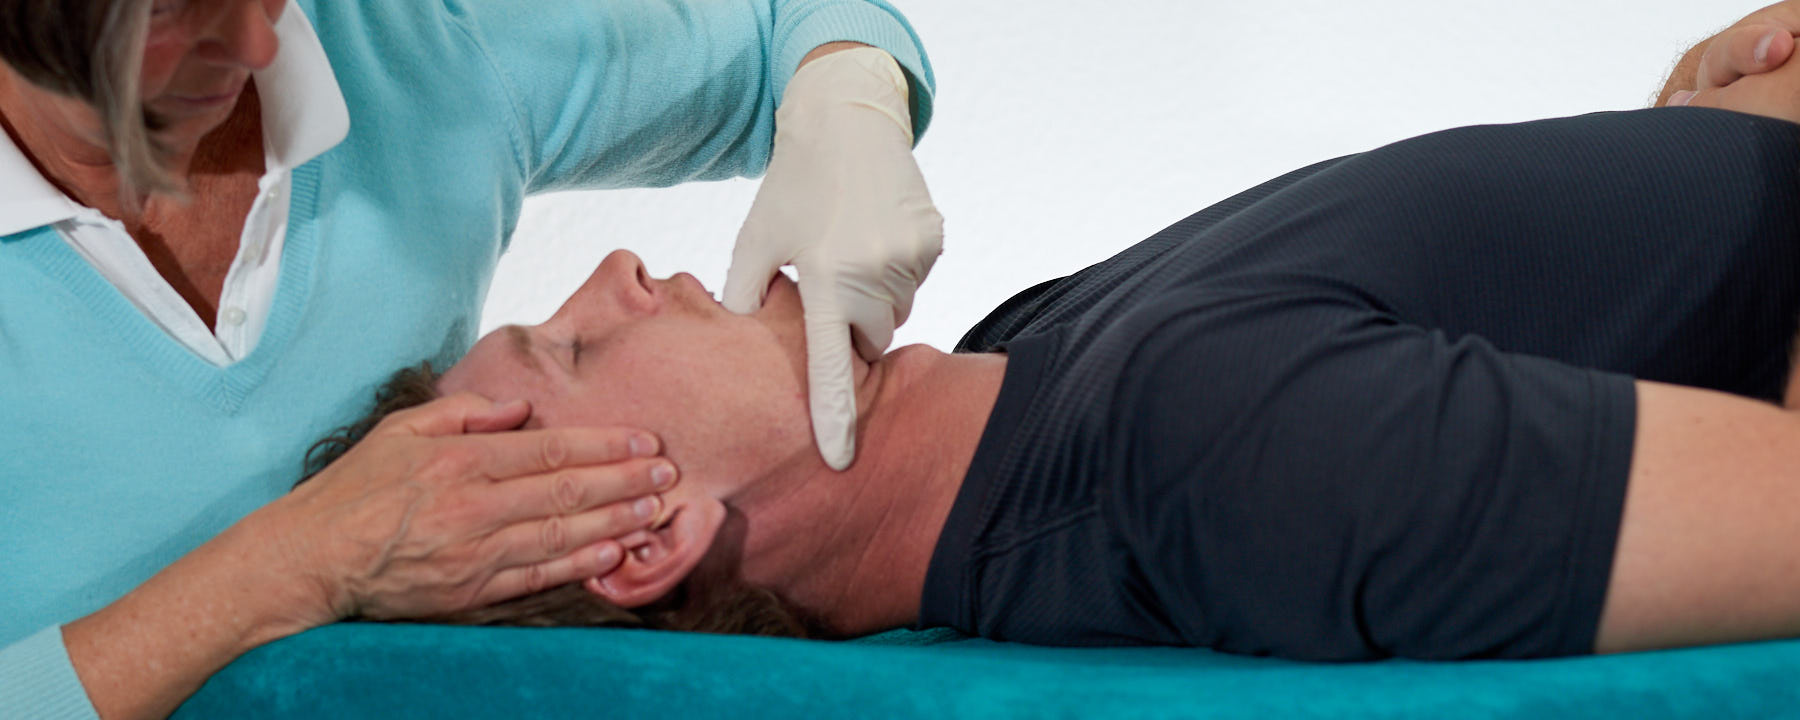 Craniomandibuläre Kiefergelenkbehandlung eines männlichen Patienten